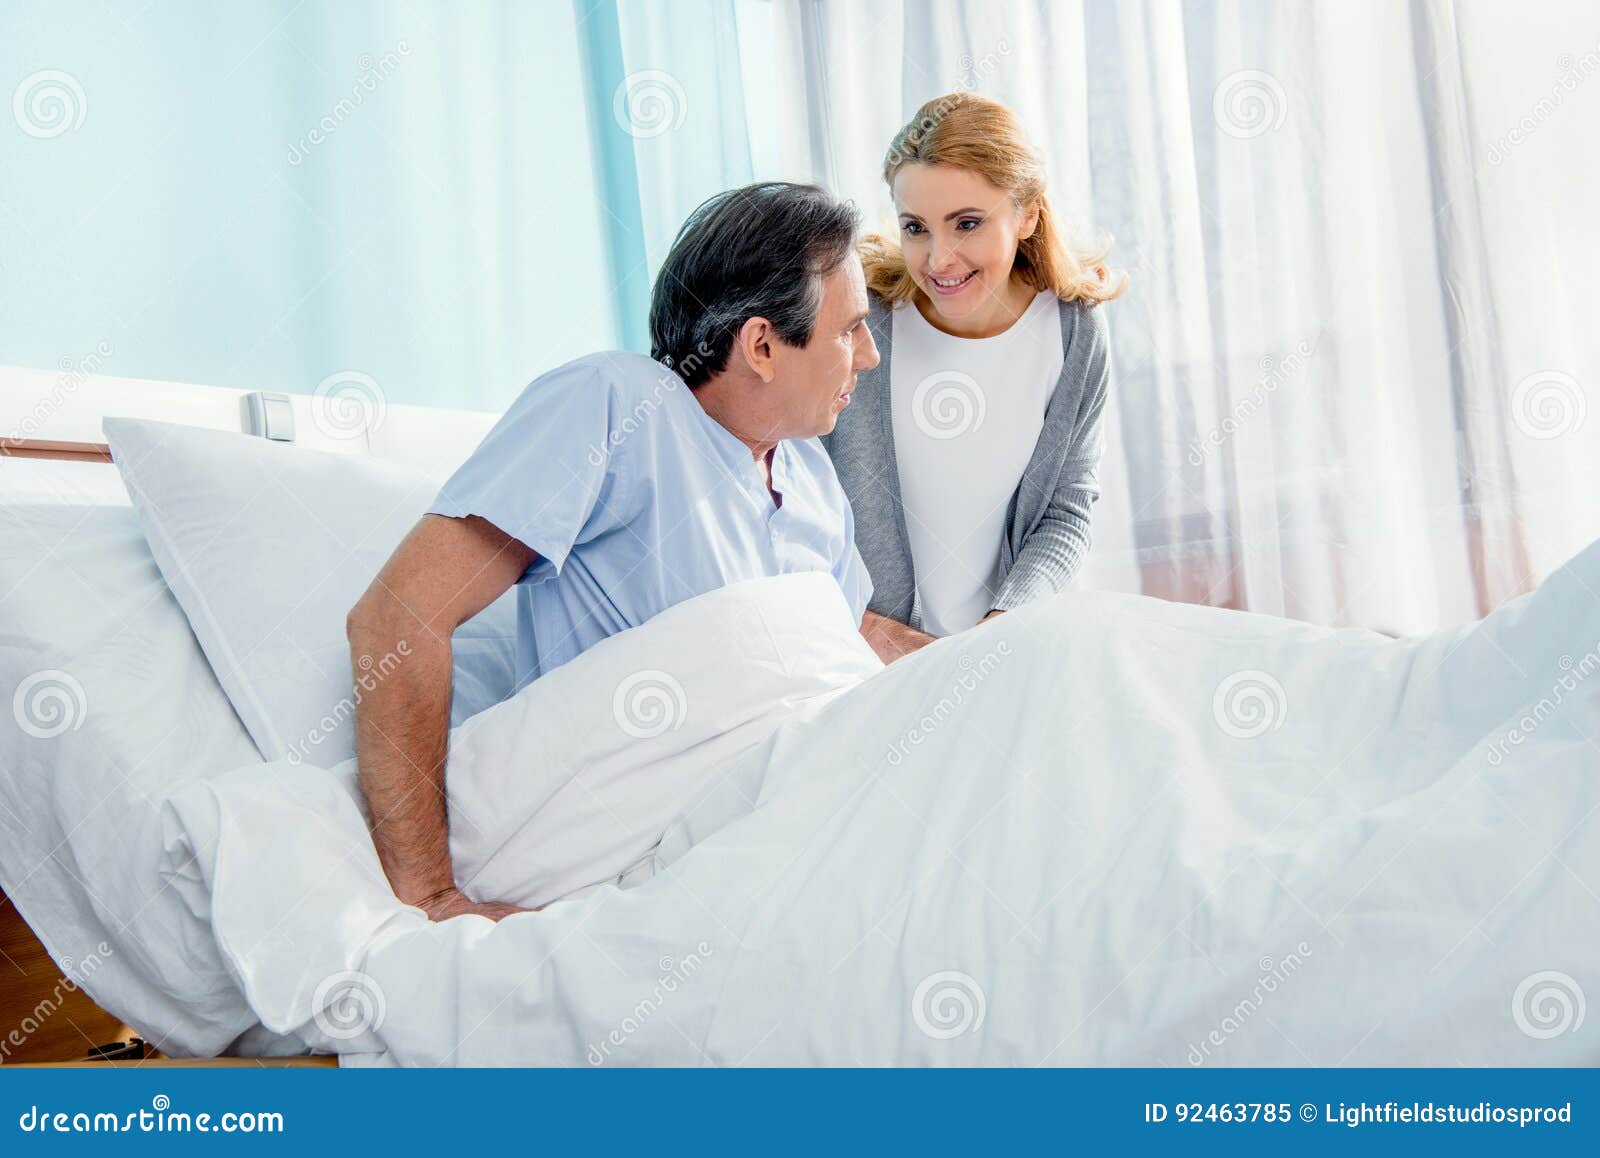 Пациенту при строгом постельном режиме разрешается. Строгий постельный режим. Пациент сидит на кровати. Постельный режим строгий постельный режим. Соблюдение постельного режима.